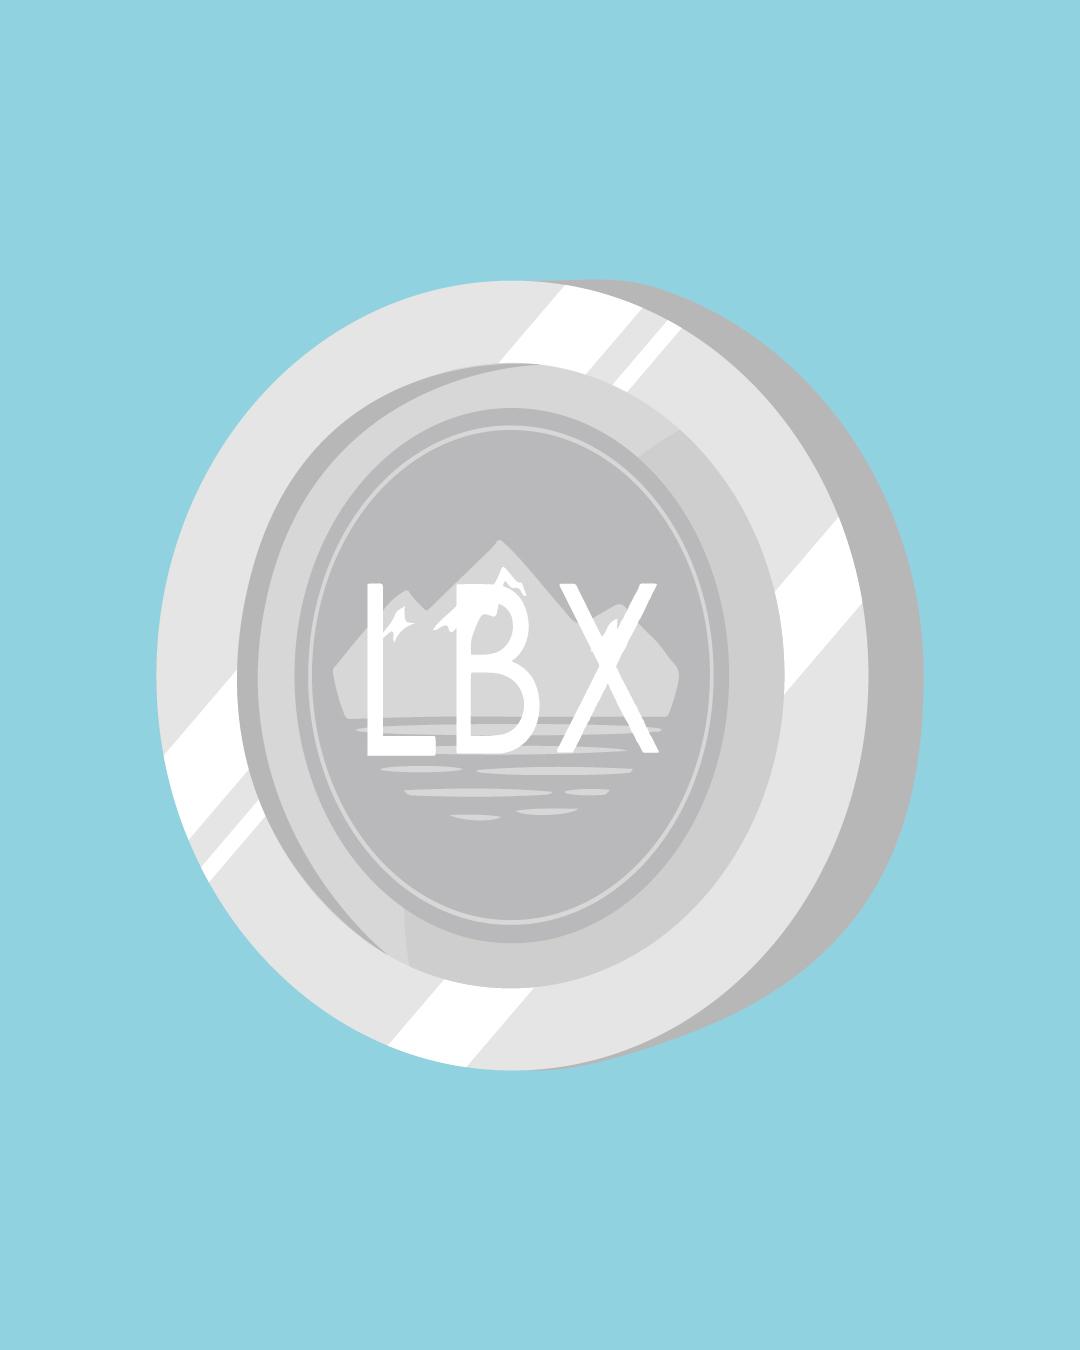 LBX crypto logo